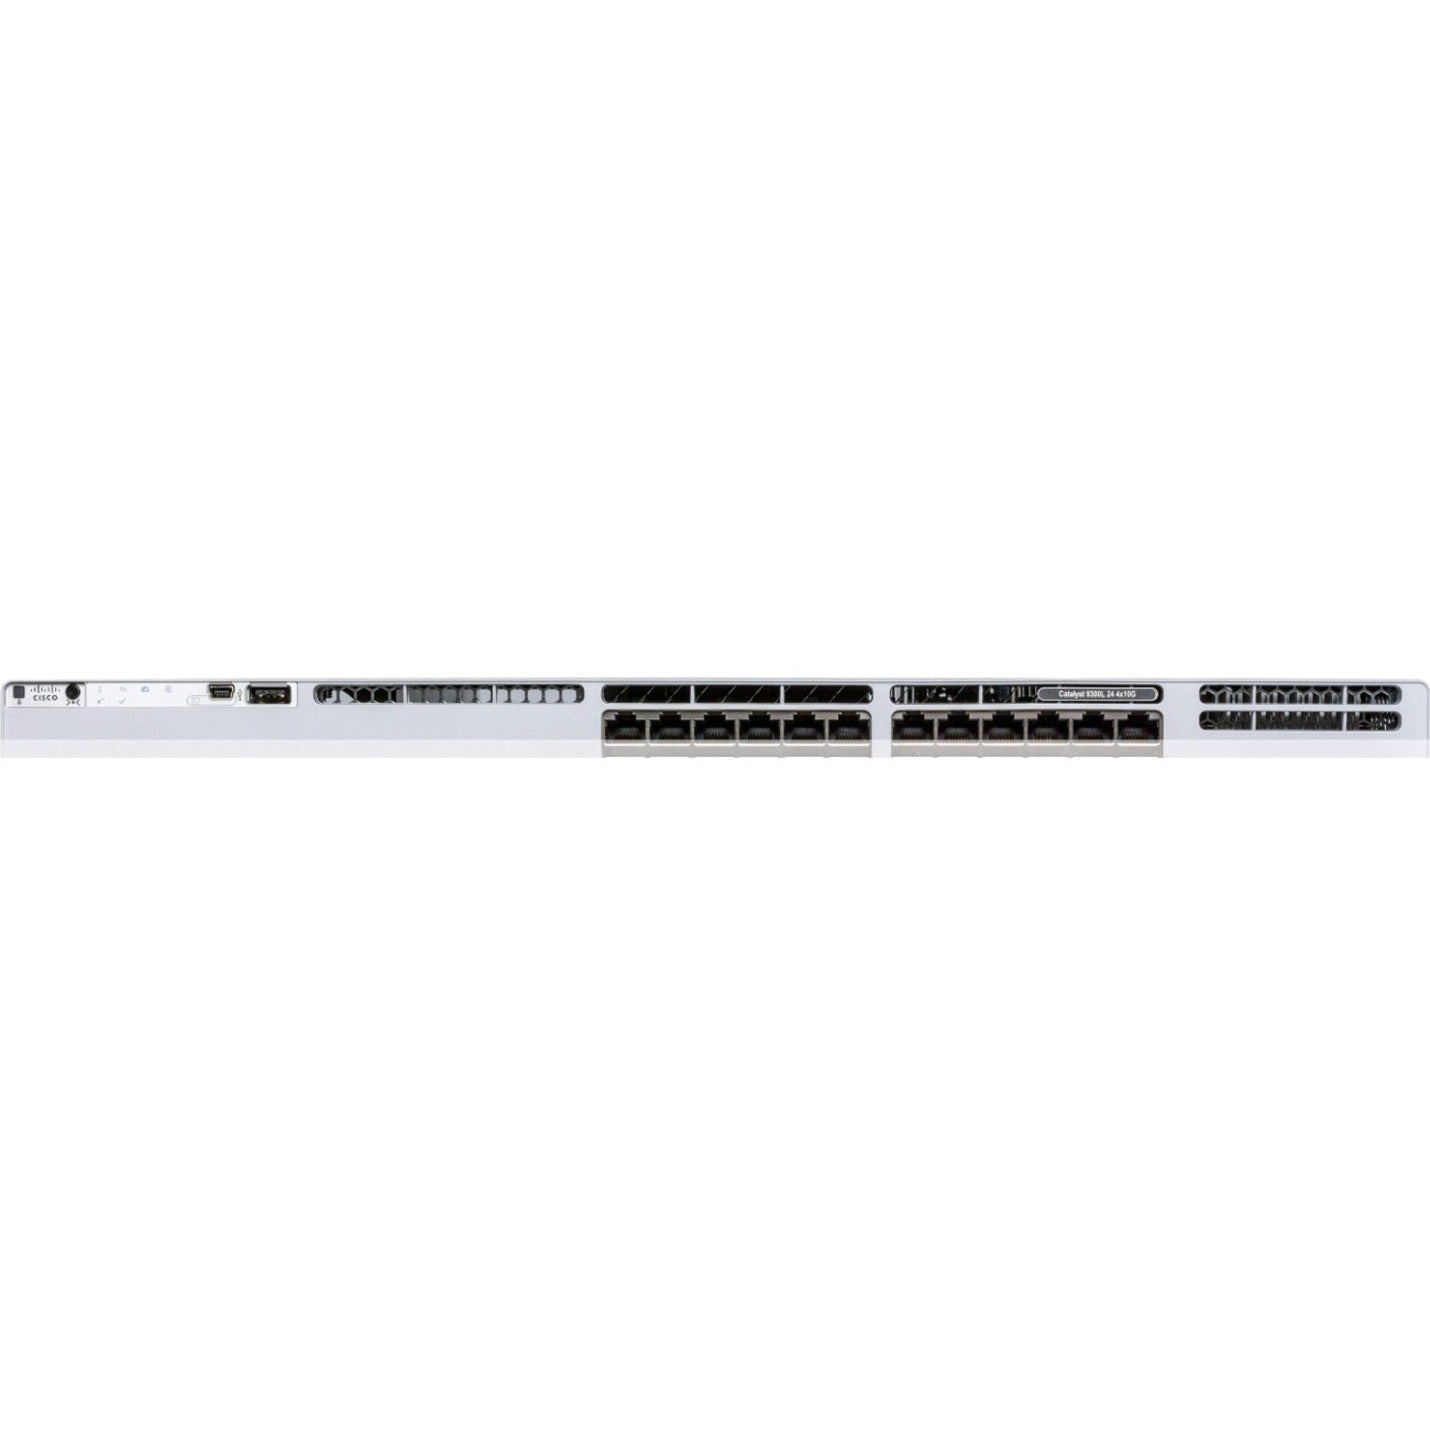 Cisco C9300L-24T-4X-E Catalyst 9300L-24T-4X-E Switch, 24 Gigabit Ethernet Ports, 4 10 Gigabit Ethernet Uplink Ports